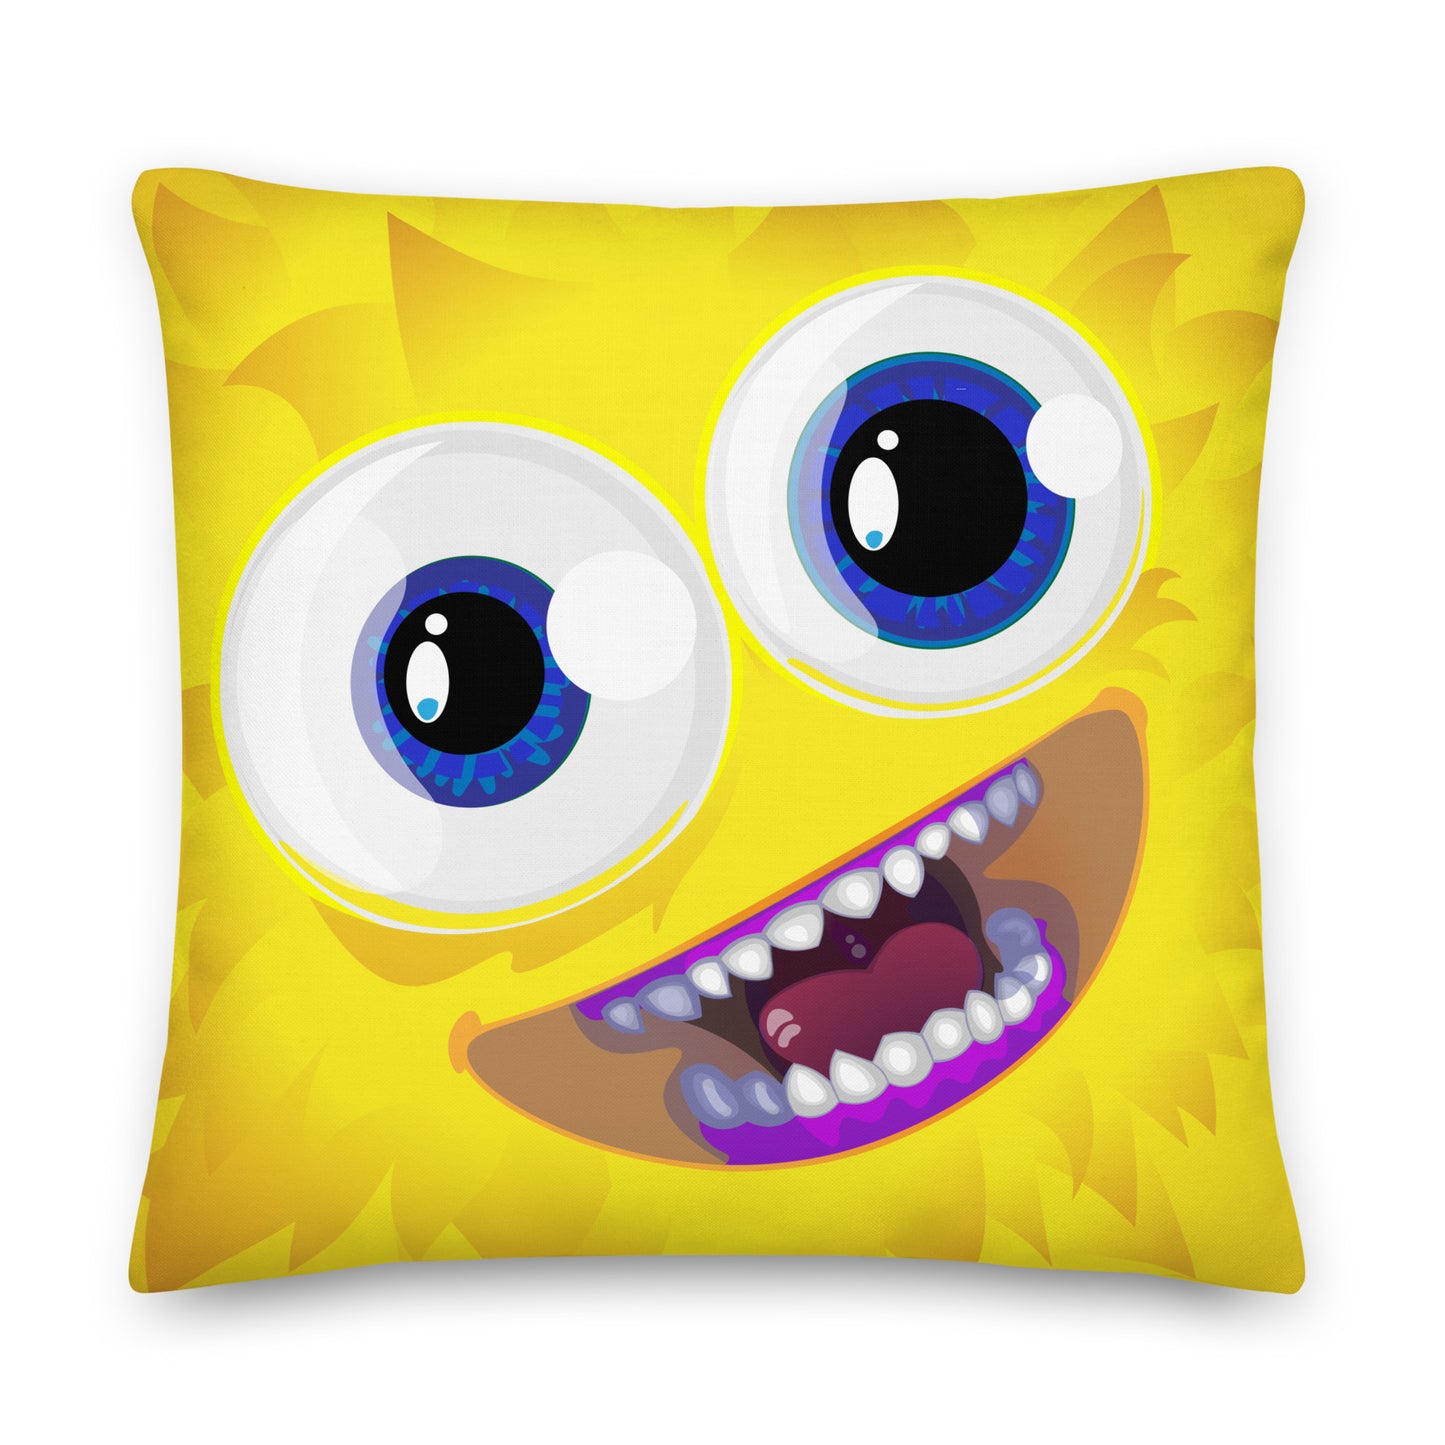 NEUTRINO LUMINO - Pillow monster